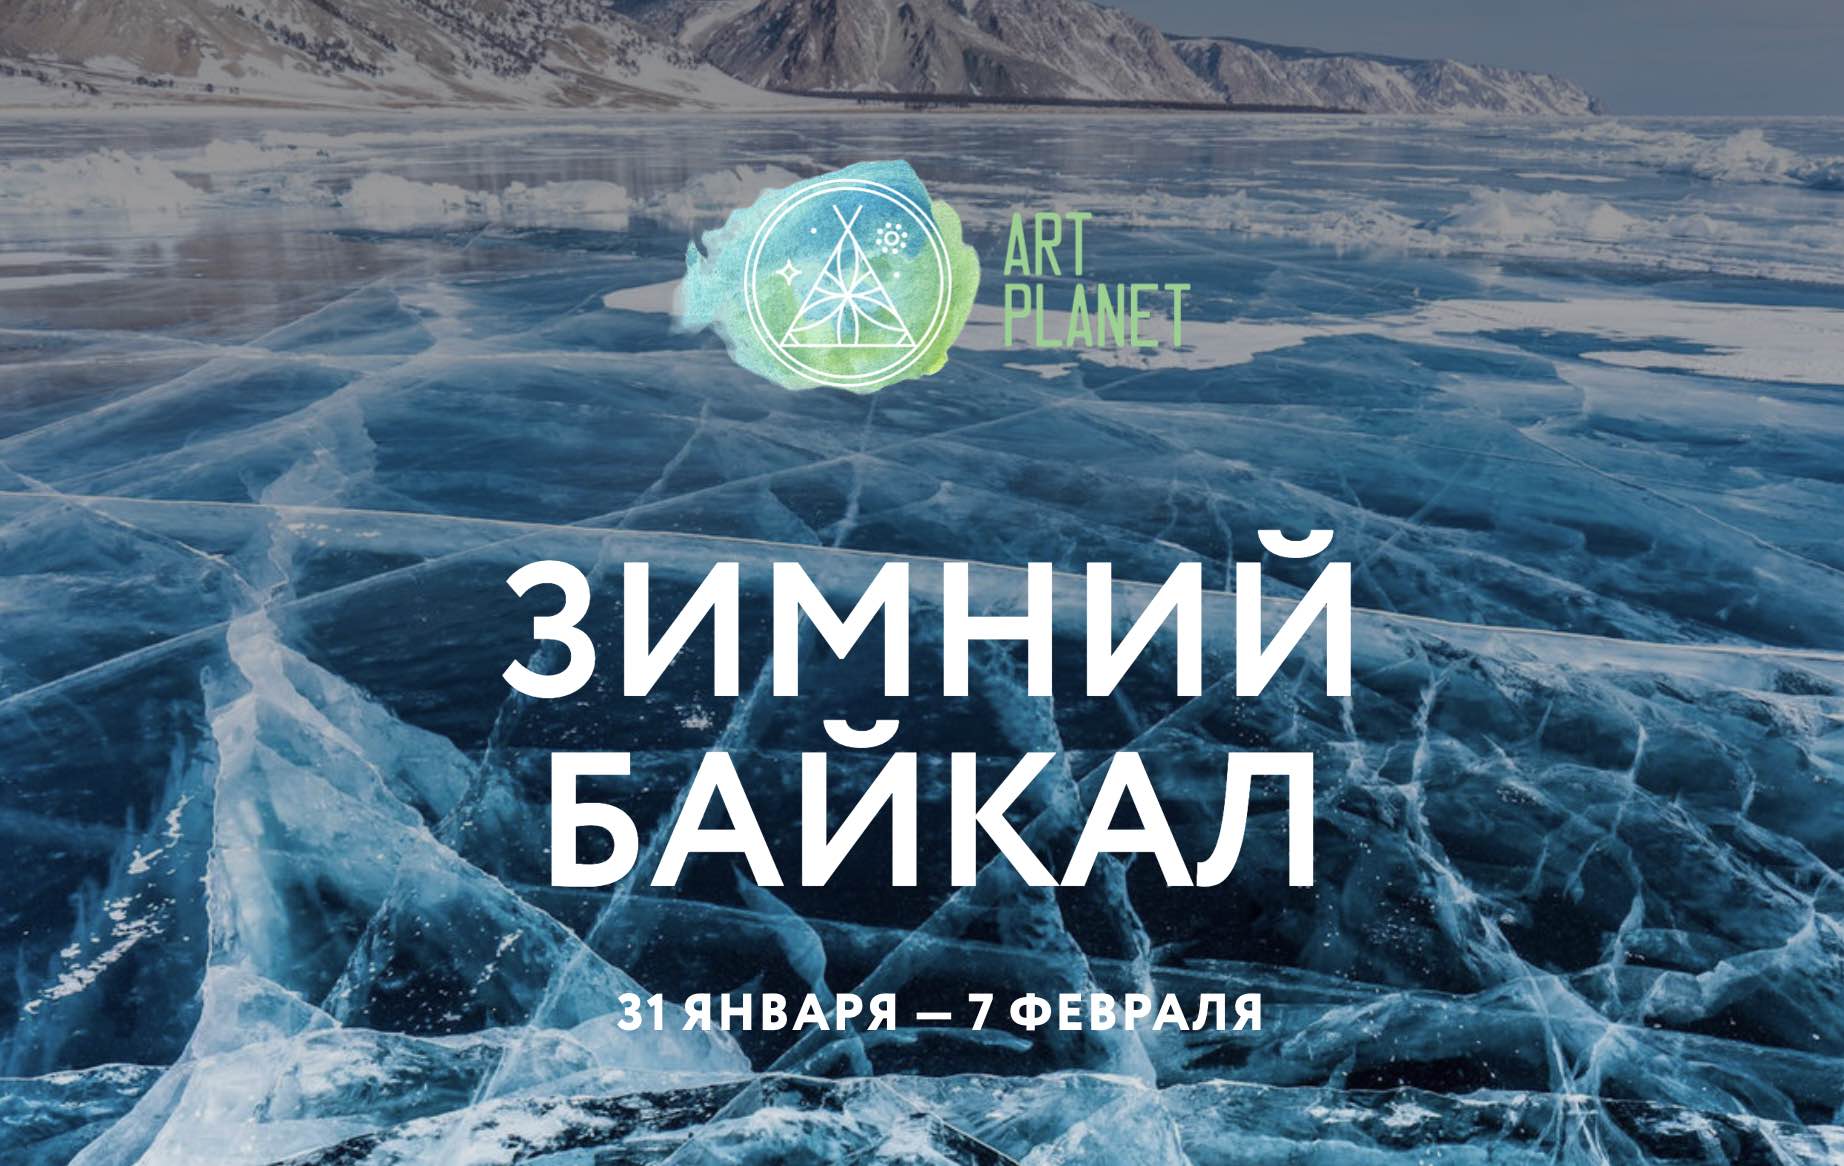 Надпись Байкал 2016